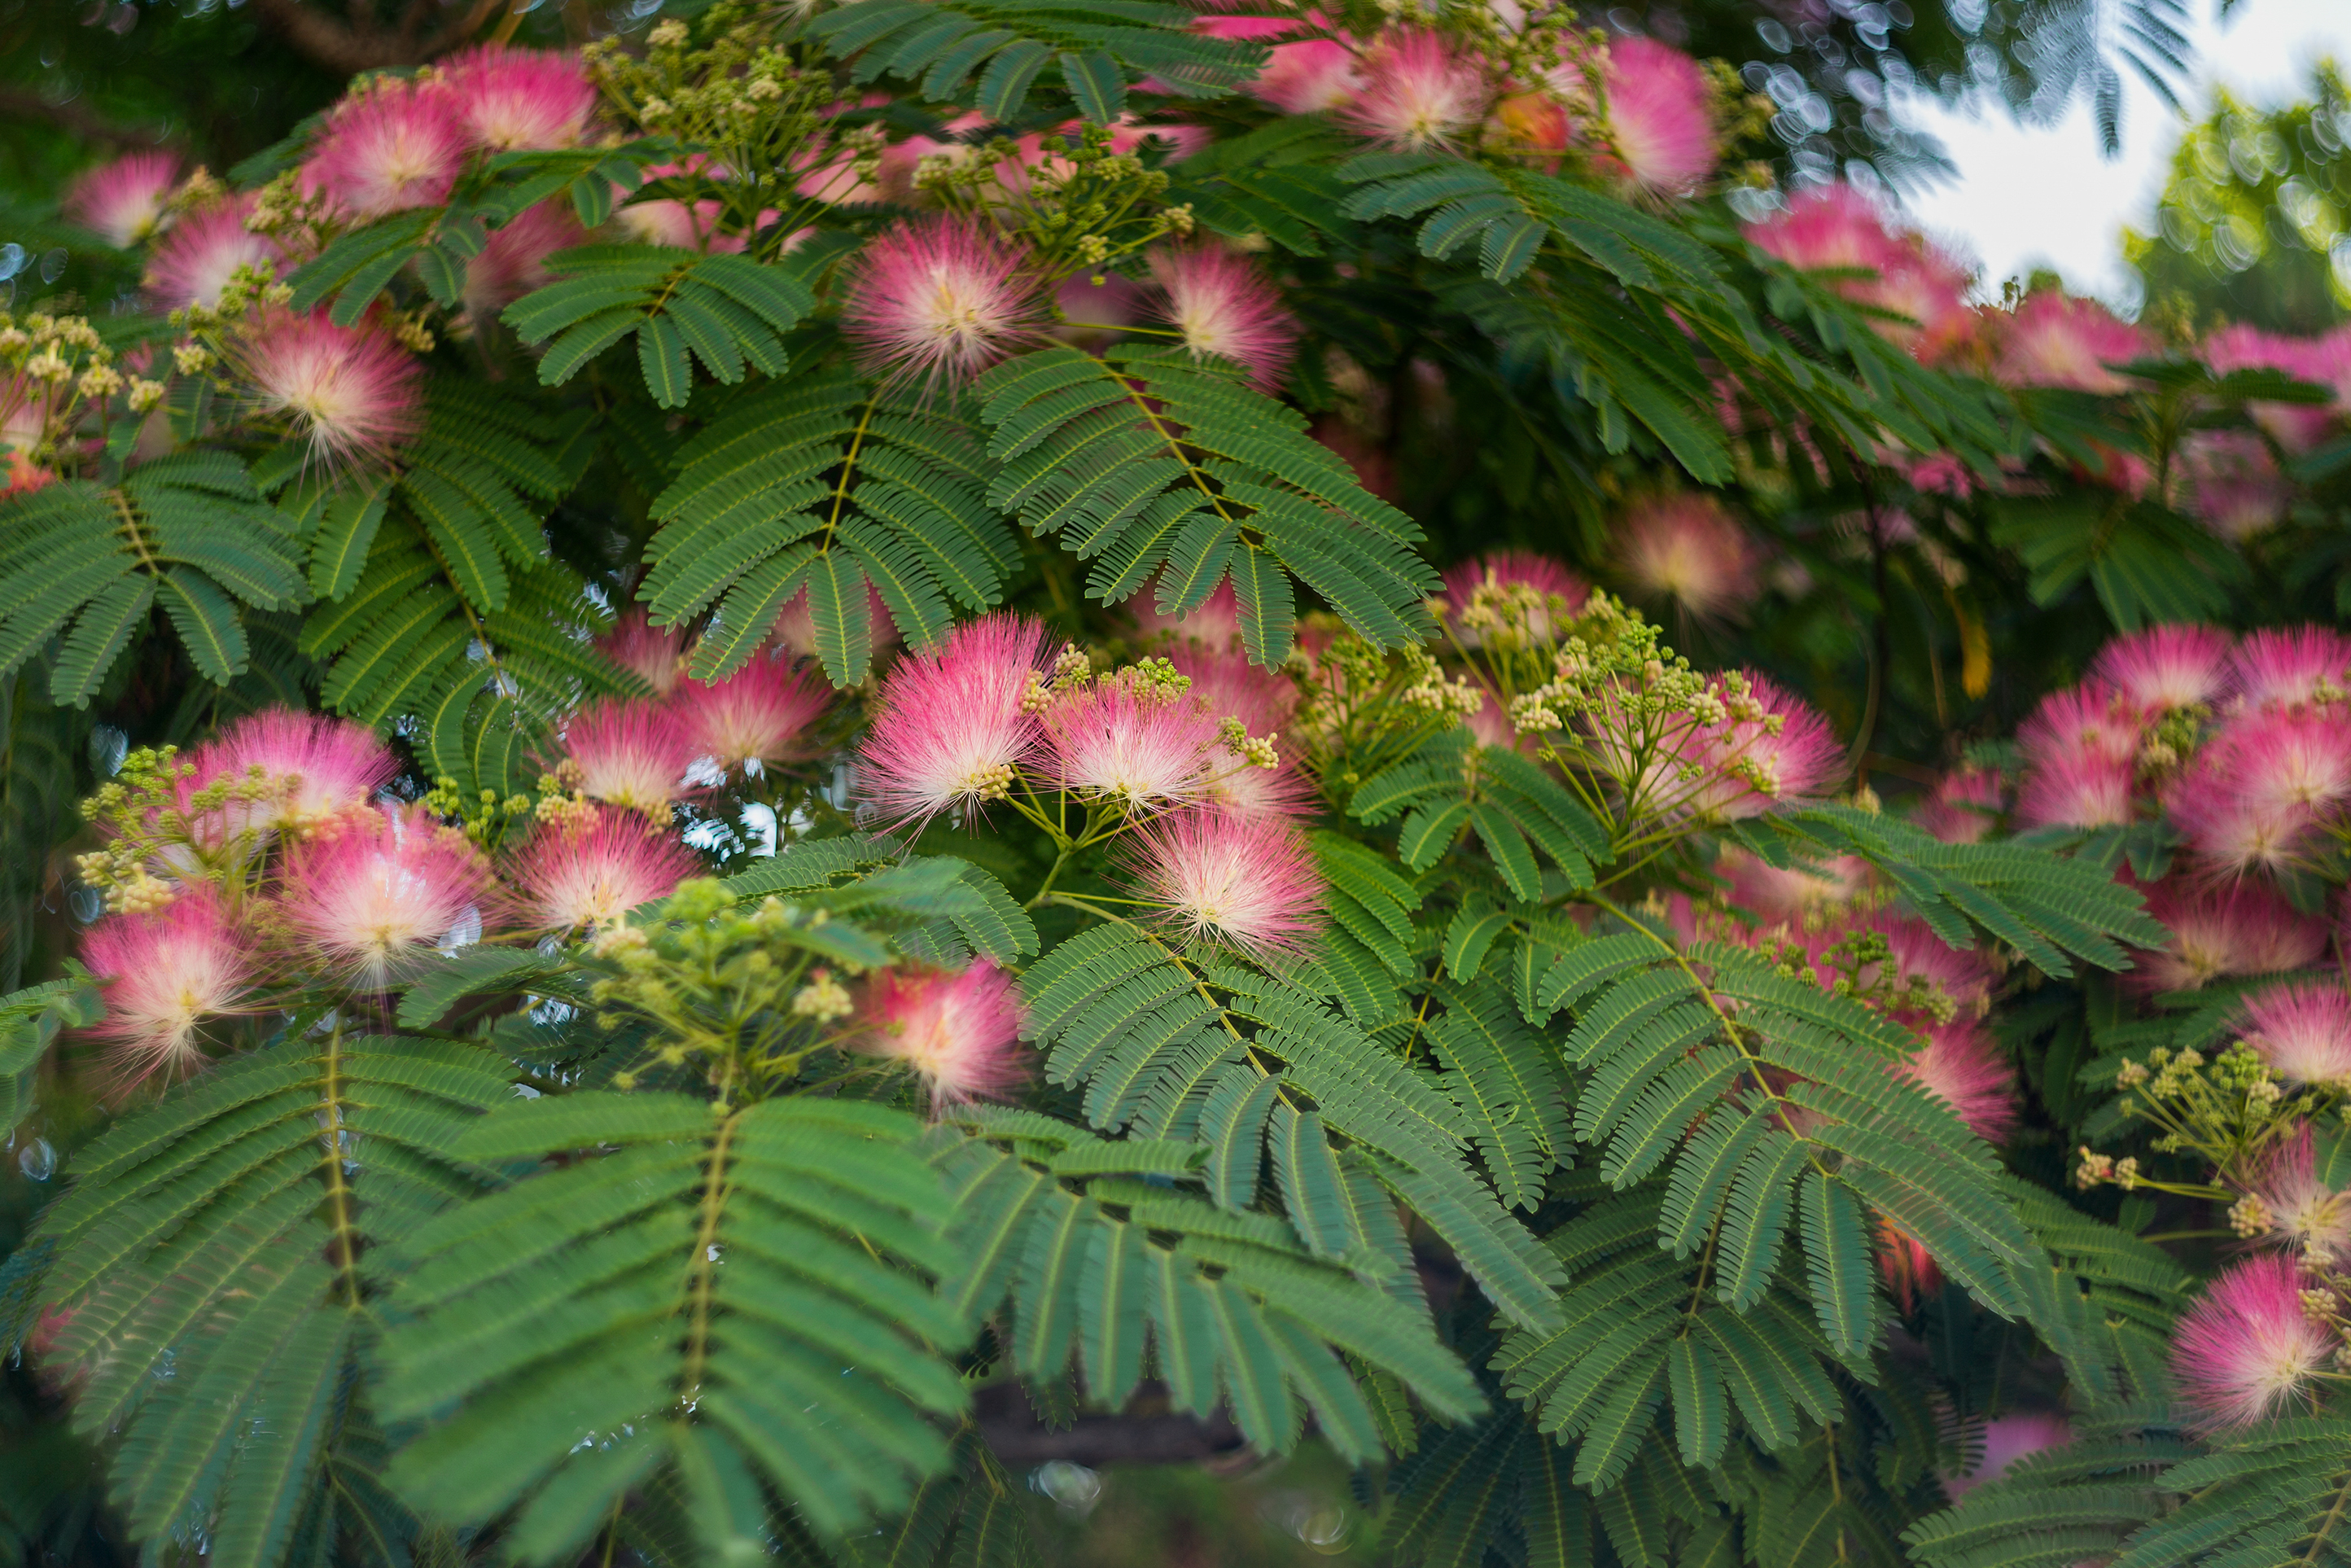 Les 12 arbres à fleurs roses les plus beaux pour avoir un jardin spectaculaire ! Copyright (c) 2020 Dmitrenko Ekaterina/Shutterstock.